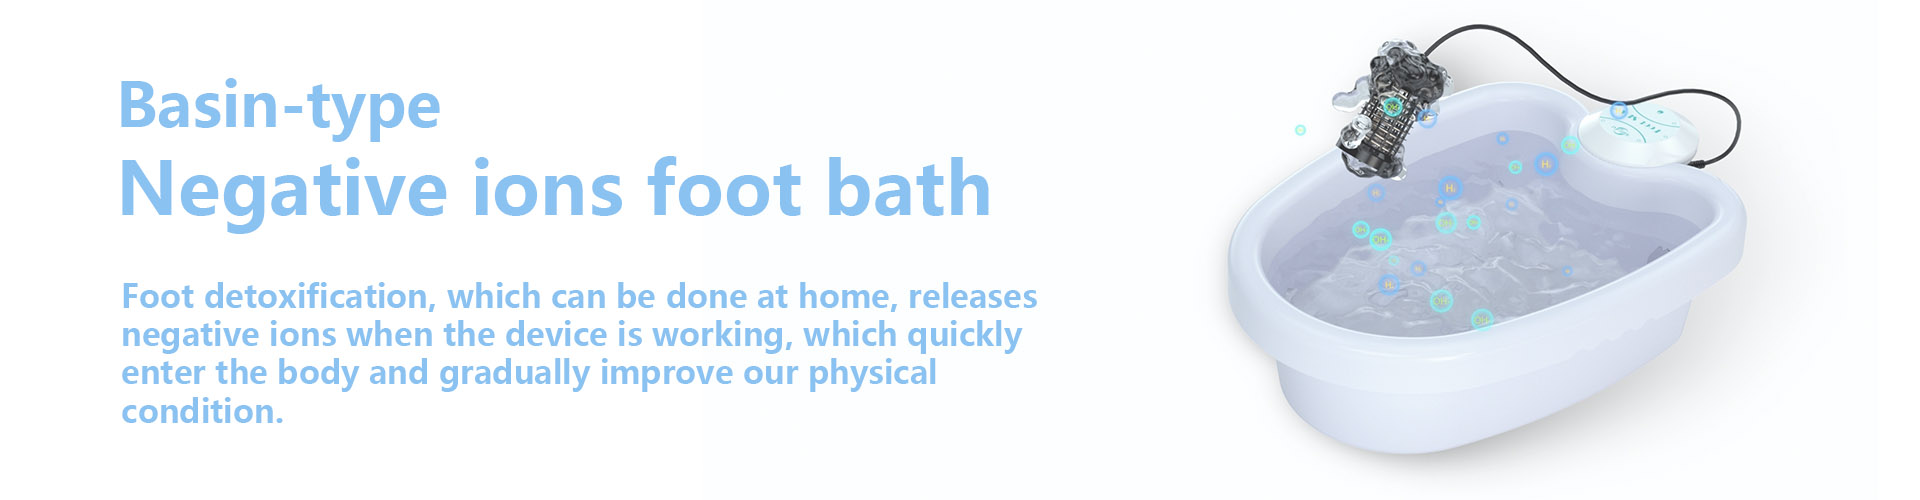 Ionic Detox Foot Bath Machine- Factory Production Site